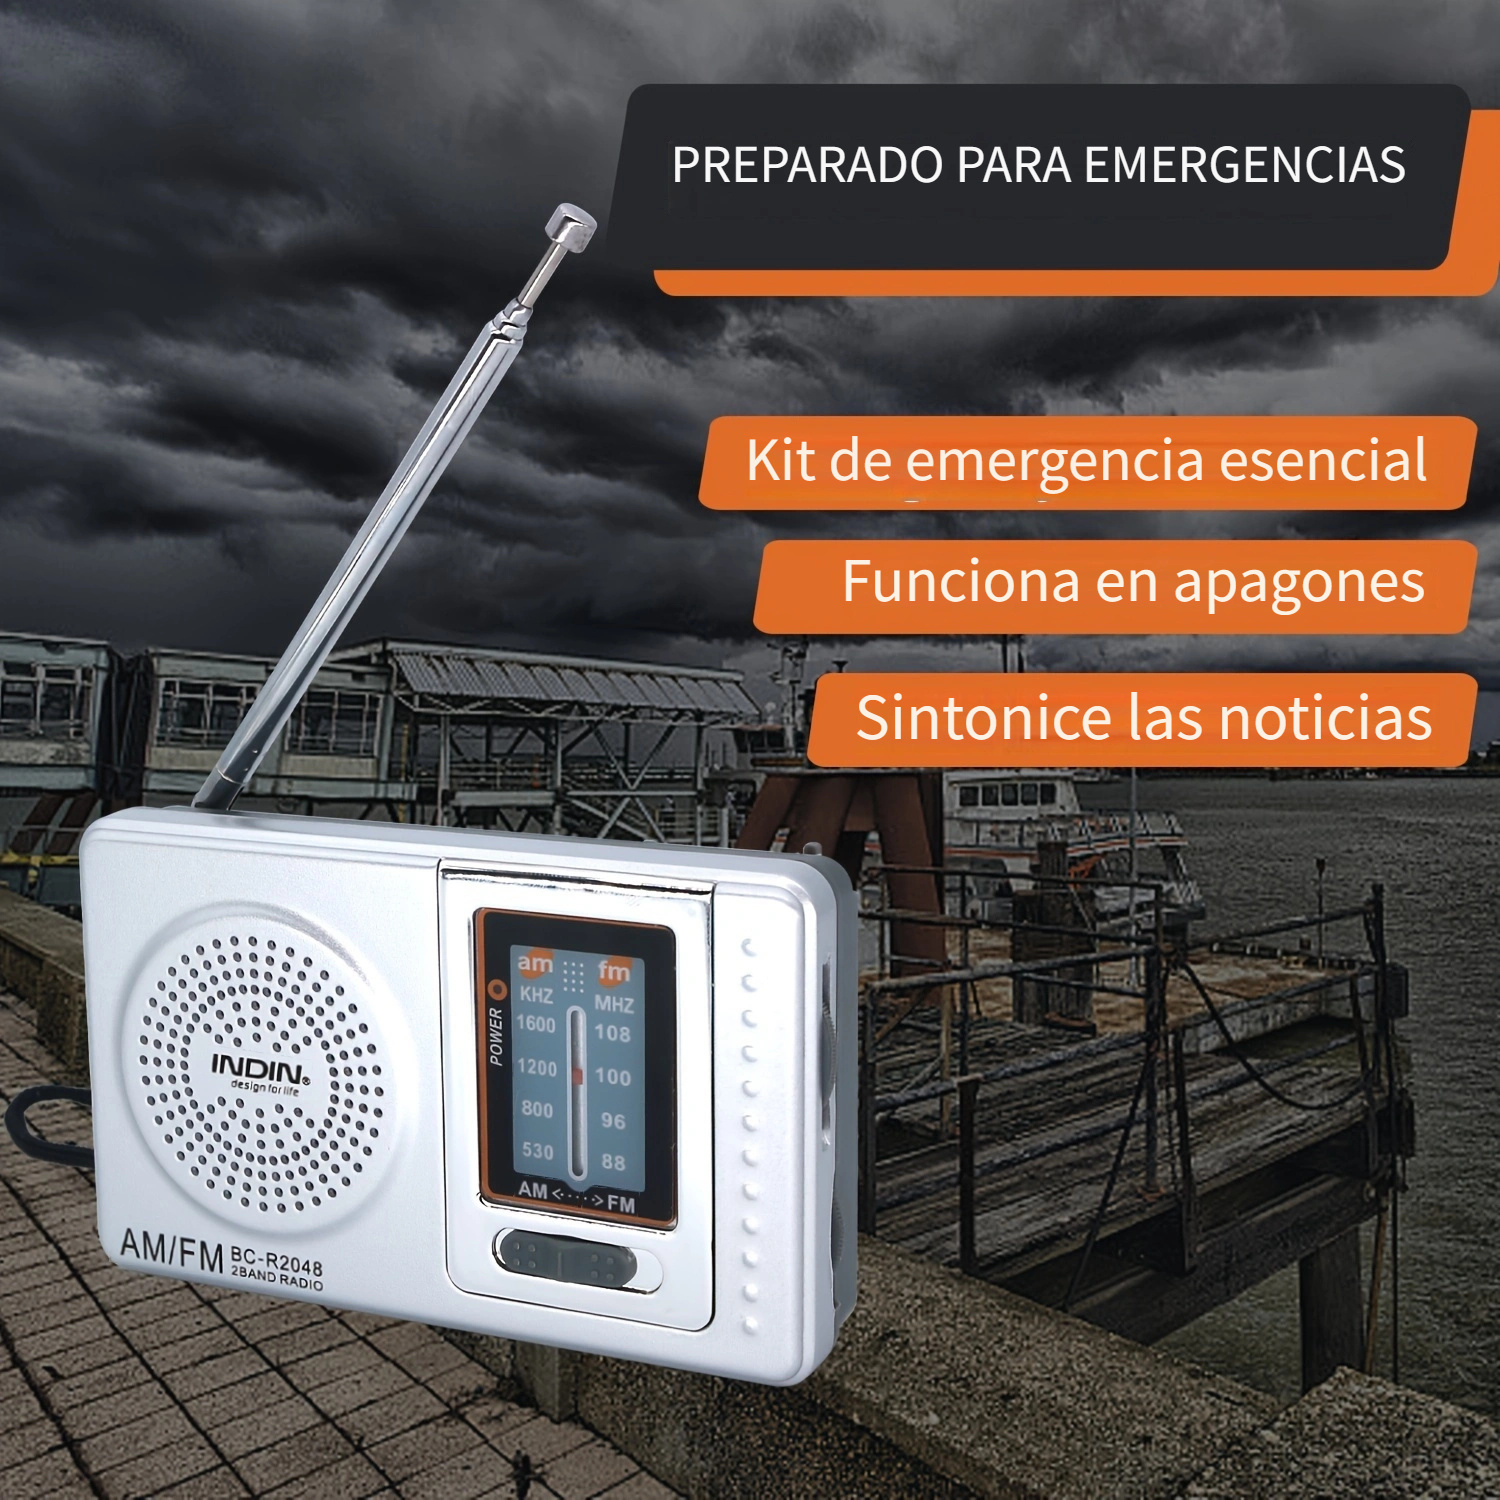  Mini radio FM digital, portátil pequeña radio reproductor  estéreo de alta sensibilidad con cordón y auricular : Electrónica